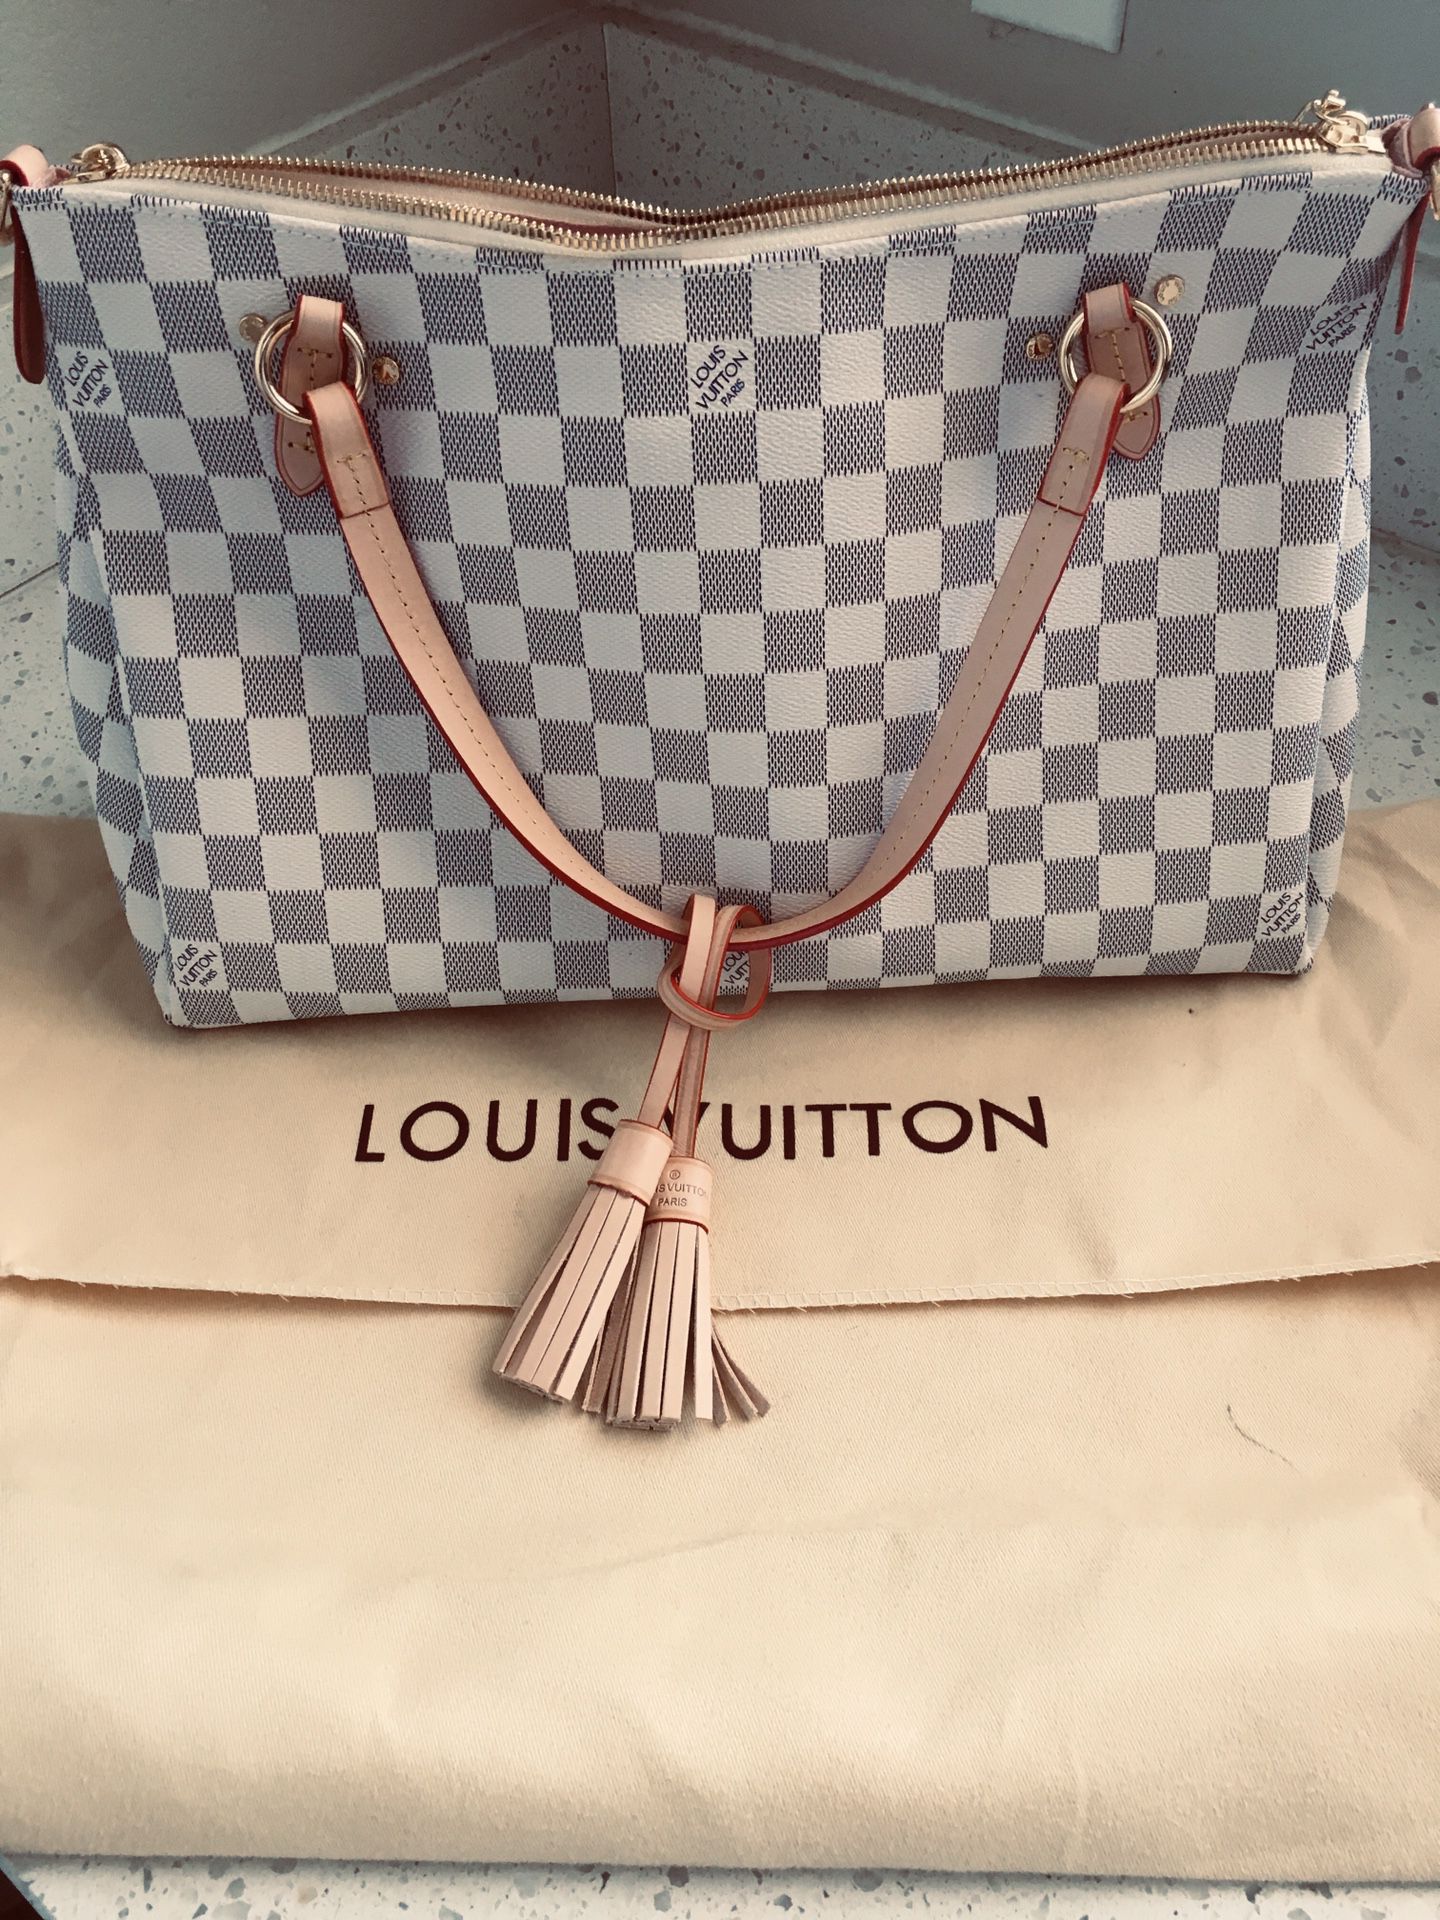 Louis Vuitton Damier Azur Canvas Lymington Bag